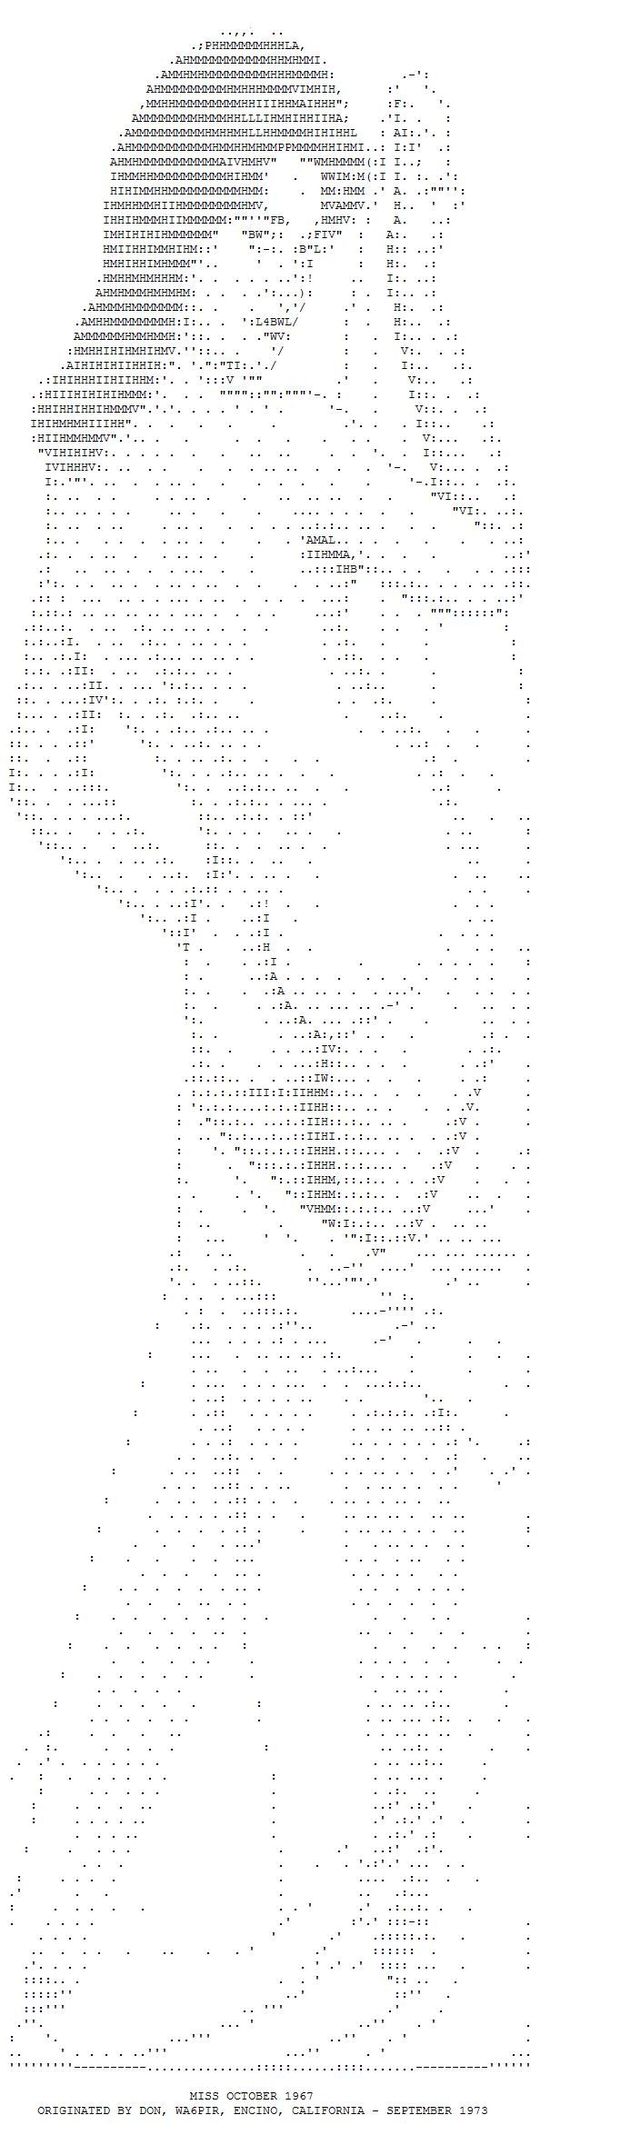 ASCII erotic images - 01